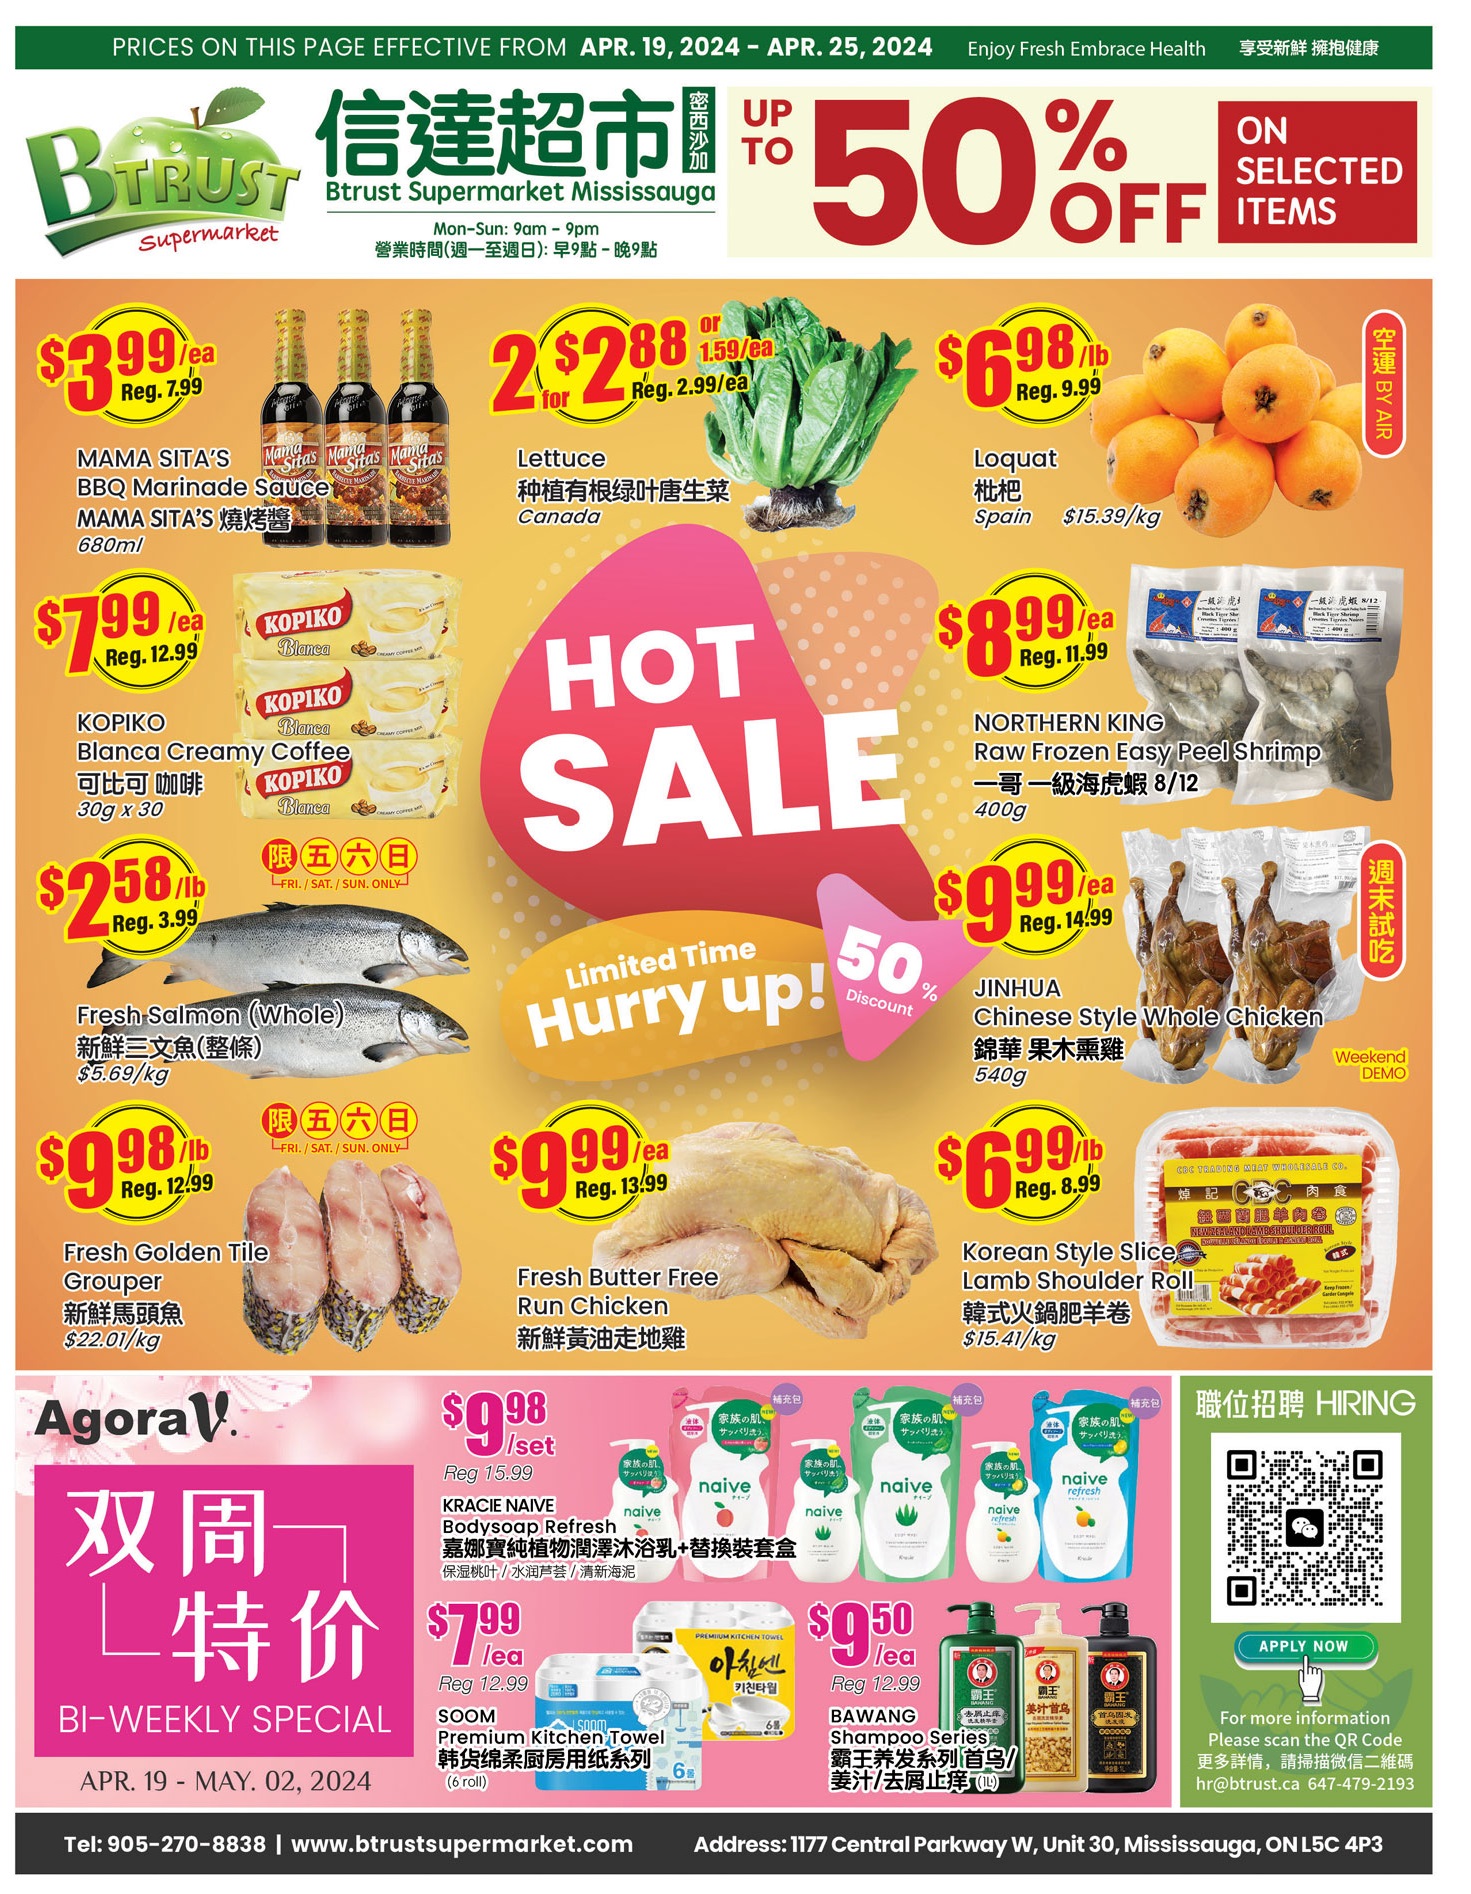 BTrust supermarket - Mississauga - Weekly Flyer Specials